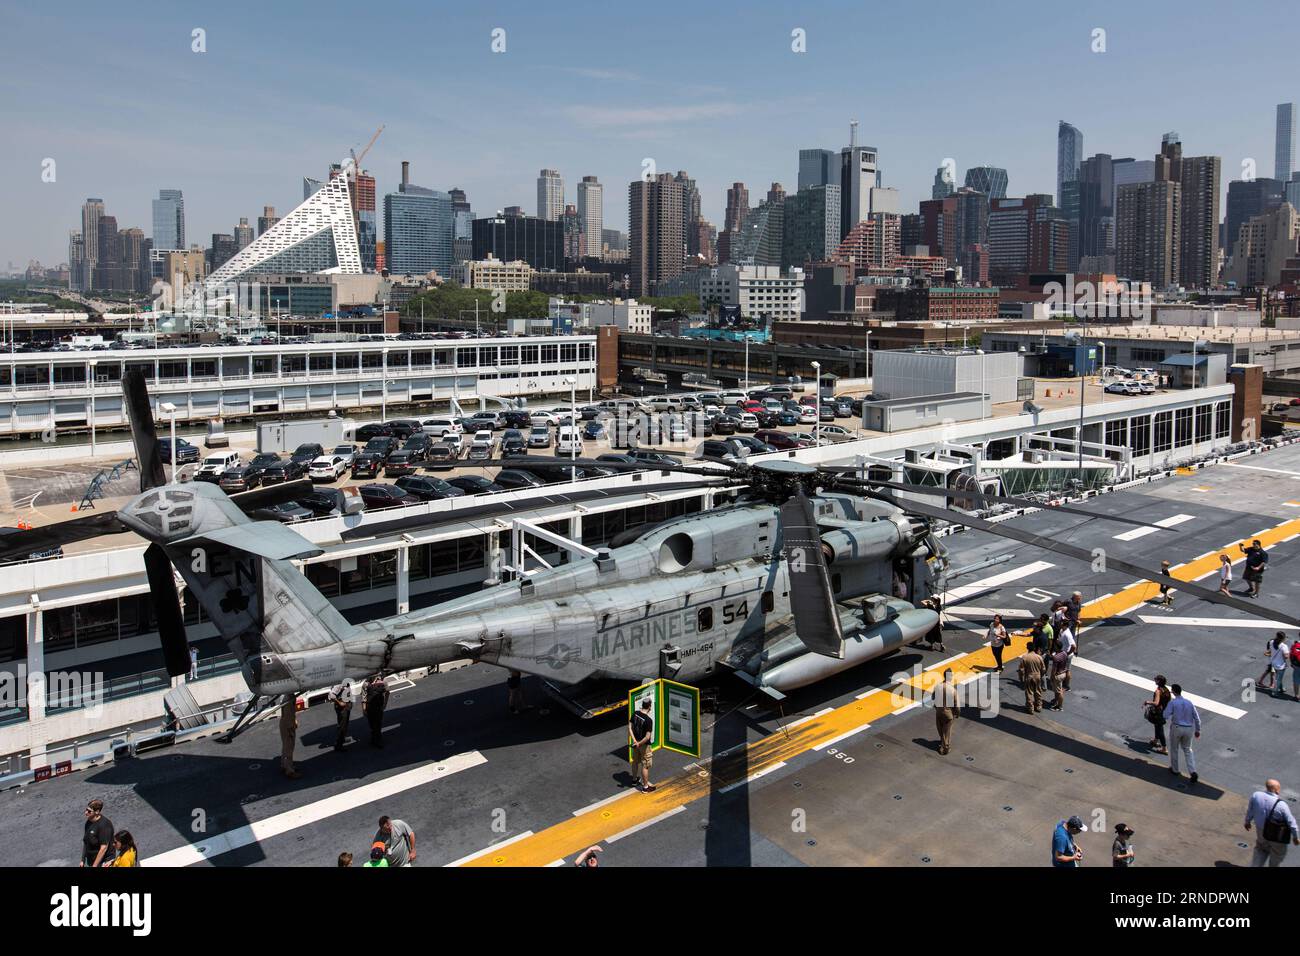 Ein Sikorsky CH-53E Super-Hallion-Hubschrauber ist an Bord der USS Bataan (LHD-5) abgebildet, einem amphibischen Angriffsschiff der Wasp-Klasse, das während der 28. Jährlichen New Yorker Flottenwoche am 27. Mai 2016 in New York, den USA, am Pier 88 anlegte. Die New York Fleet Week findet vom 25. Mai bis 30. Mai statt, wo hunderte Soldaten der Streitkräfte New York City im Rahmen der Gedenkfeiern besuchen. ) US-NEW YORK-FLEET WEEK-USS BATAAN LixMuzi PUBLICATIONxNOTxINxCHN ein SIKORSKY CH 53E Super Hallion Helicopter IST AN Bord des USS Bataan LHD 5 Wasp Class Amphibien Assault SH abgebildet Stockfoto